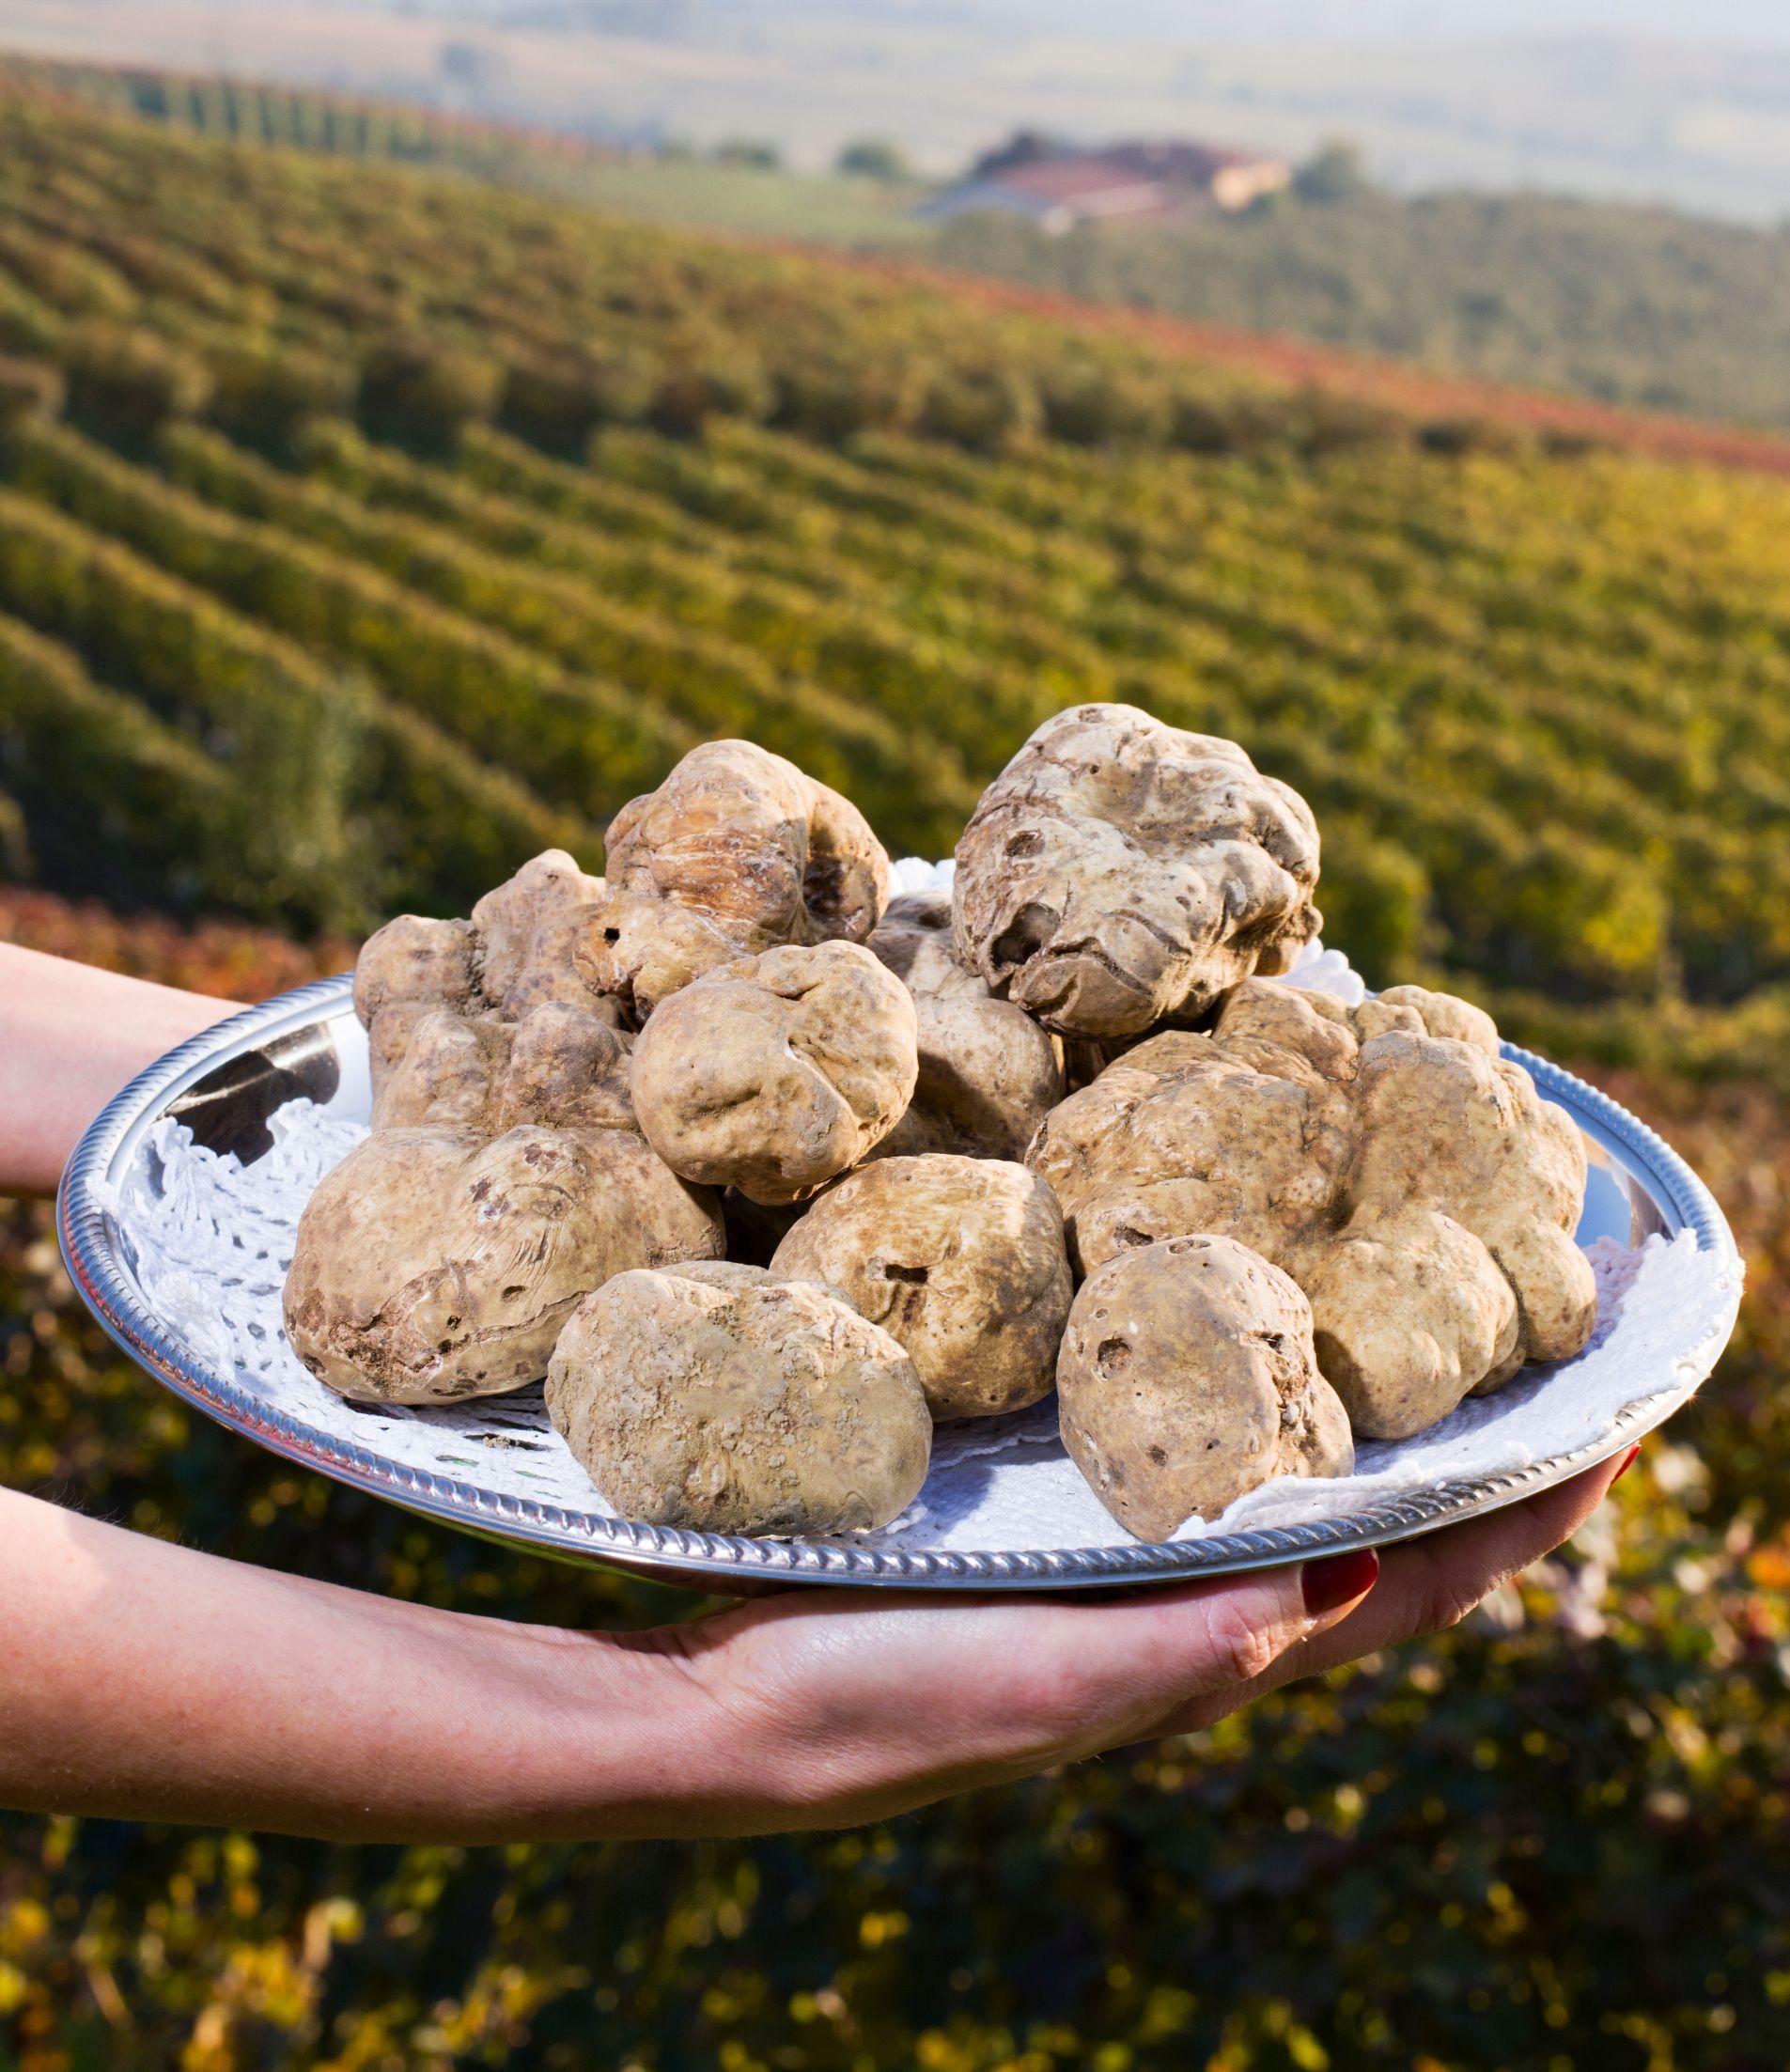 Alba white truffle Italy